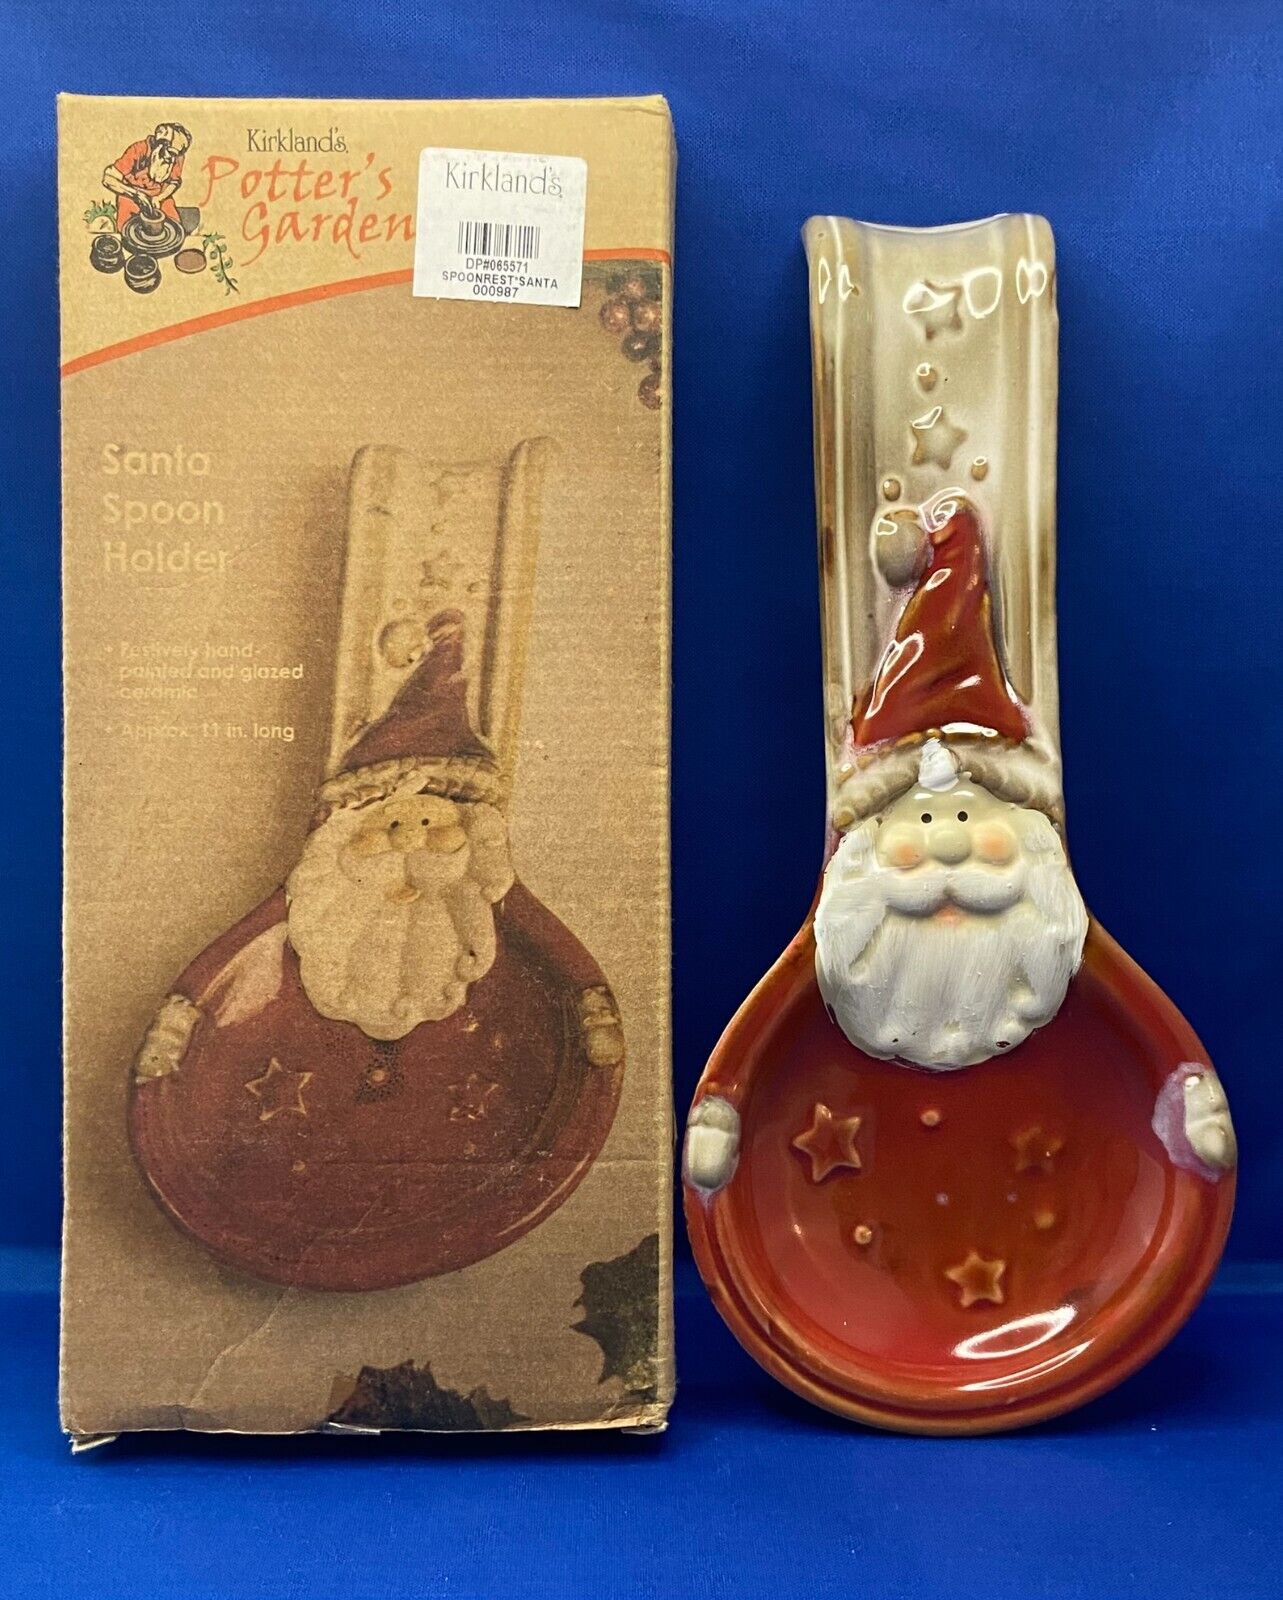 Kirkland's Potter's Garden Handpainted Glazed Christmas Santa Spoon Holder